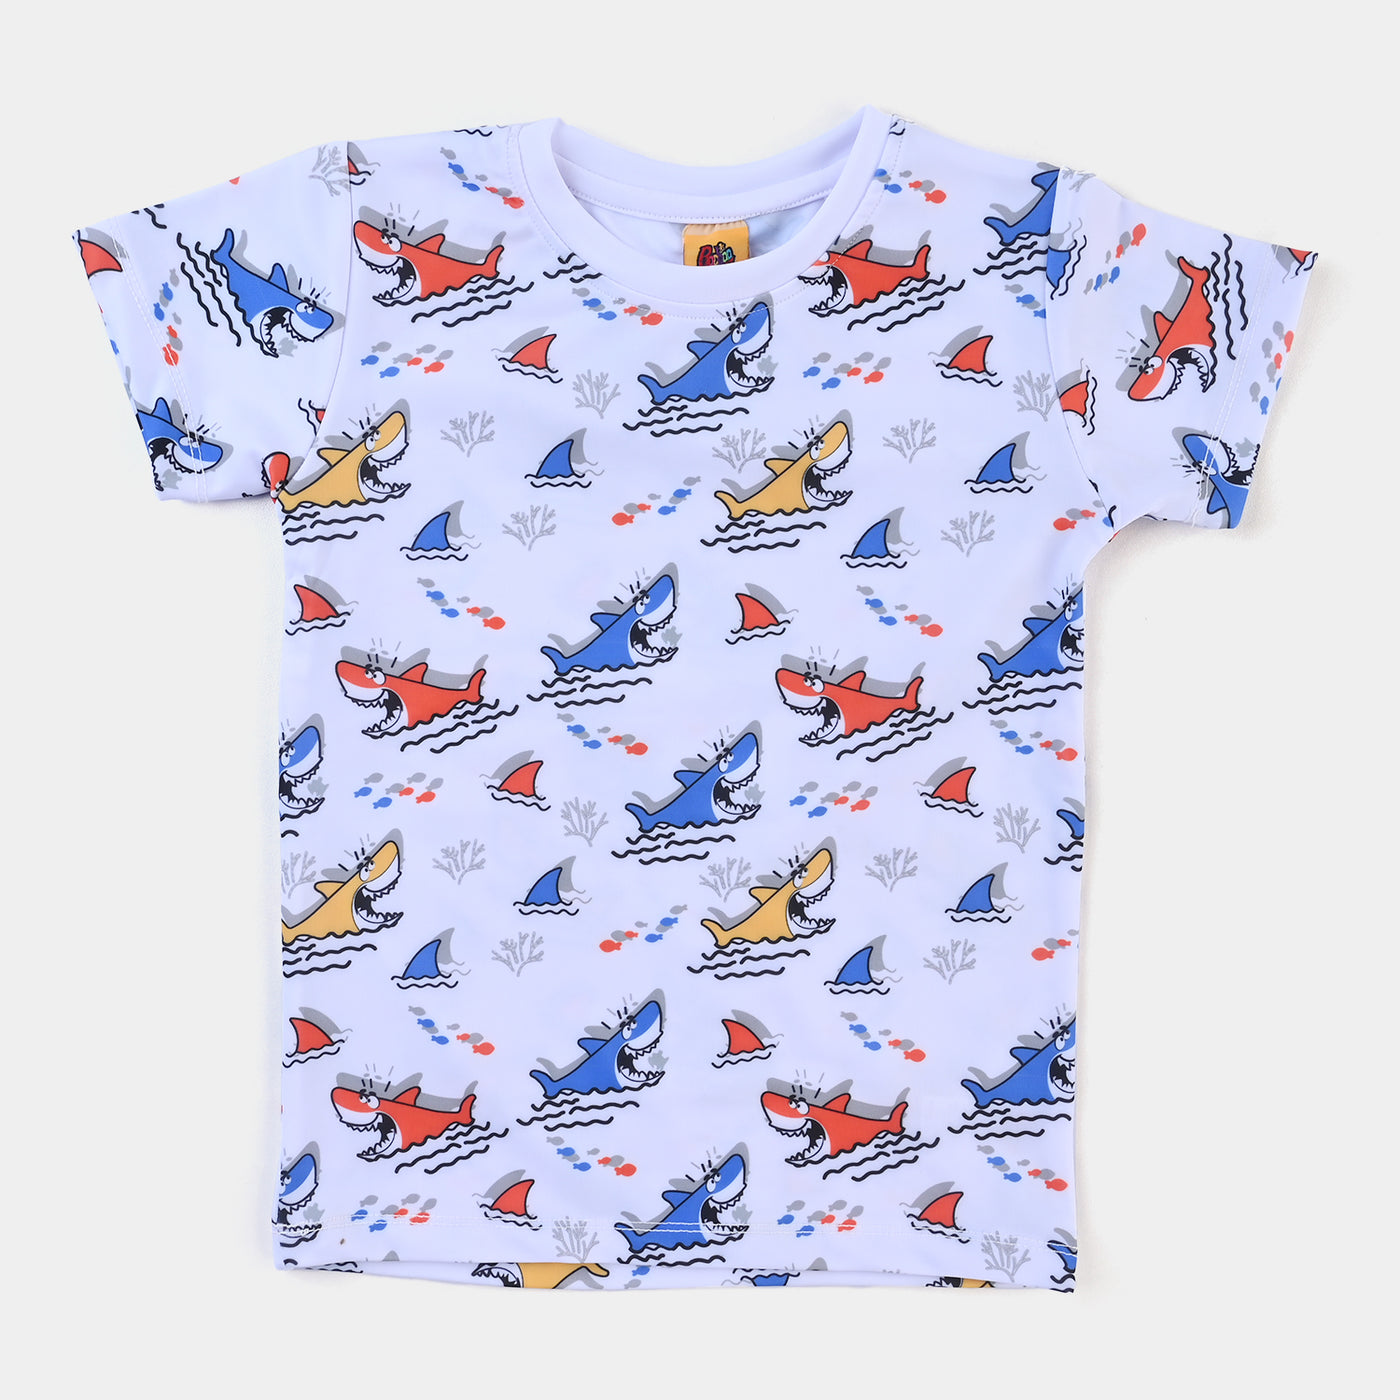 Boys Nylon Swimming Suit Shark-White